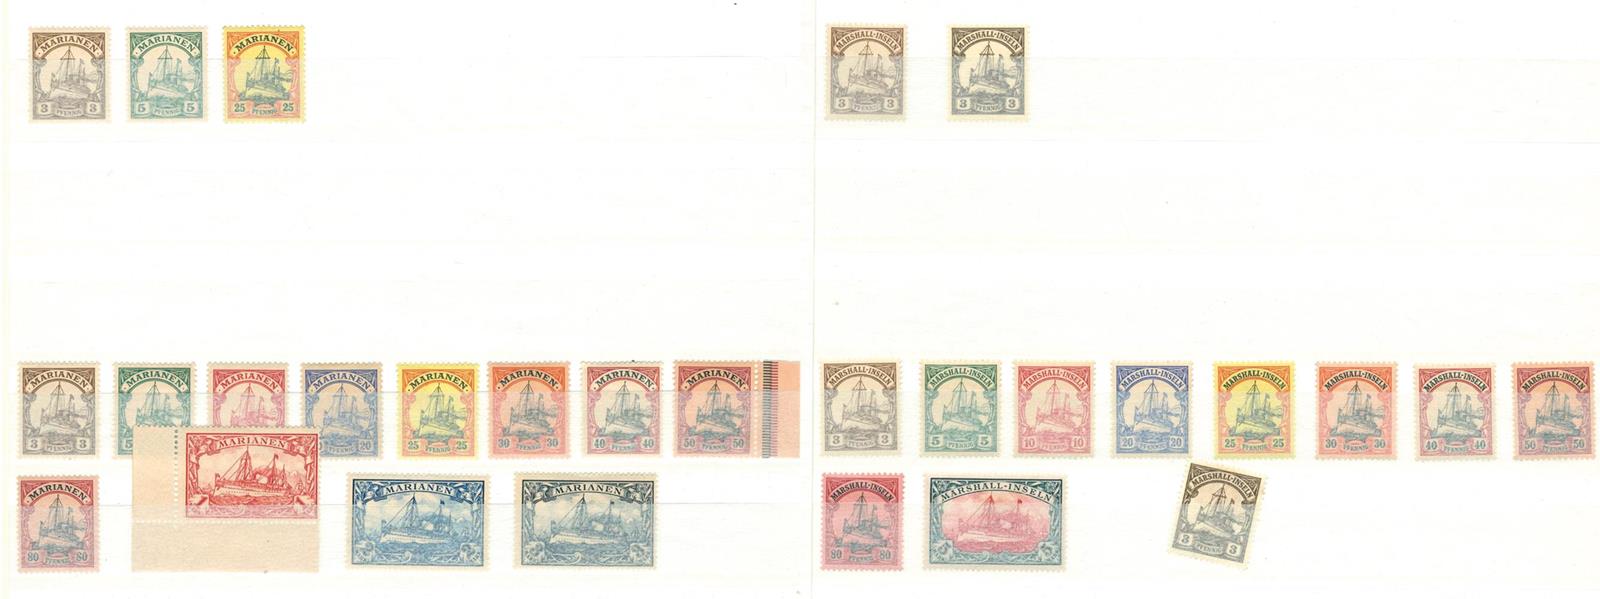 Briefmarken - Image 4 of 19